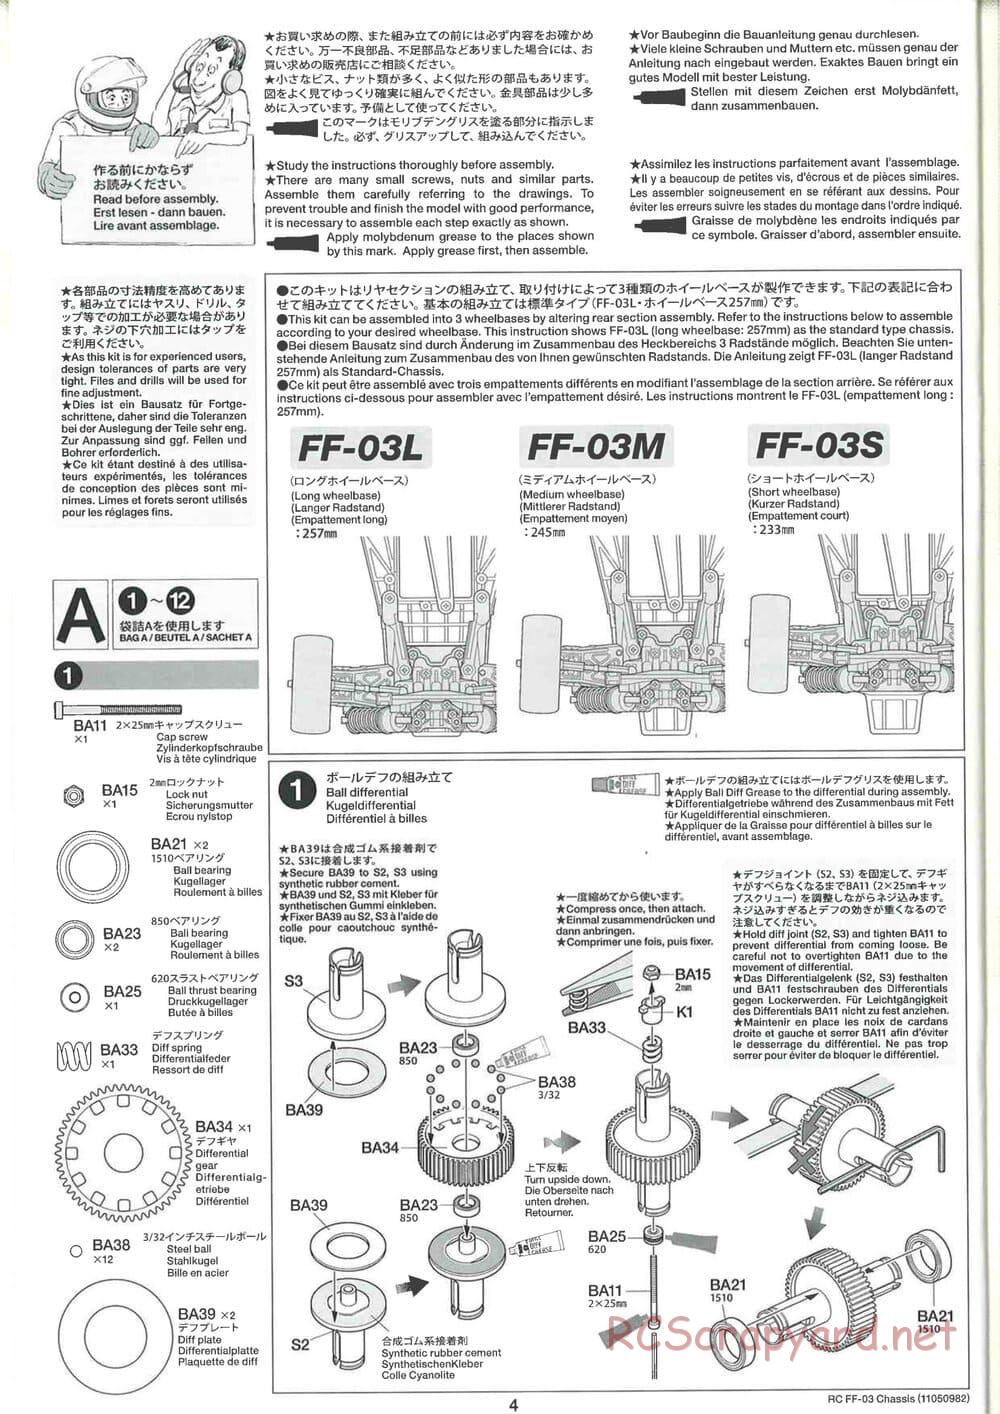 Tamiya - Castrol Honda Civic VTi - FF-03 Chassis - Manual - Page 4